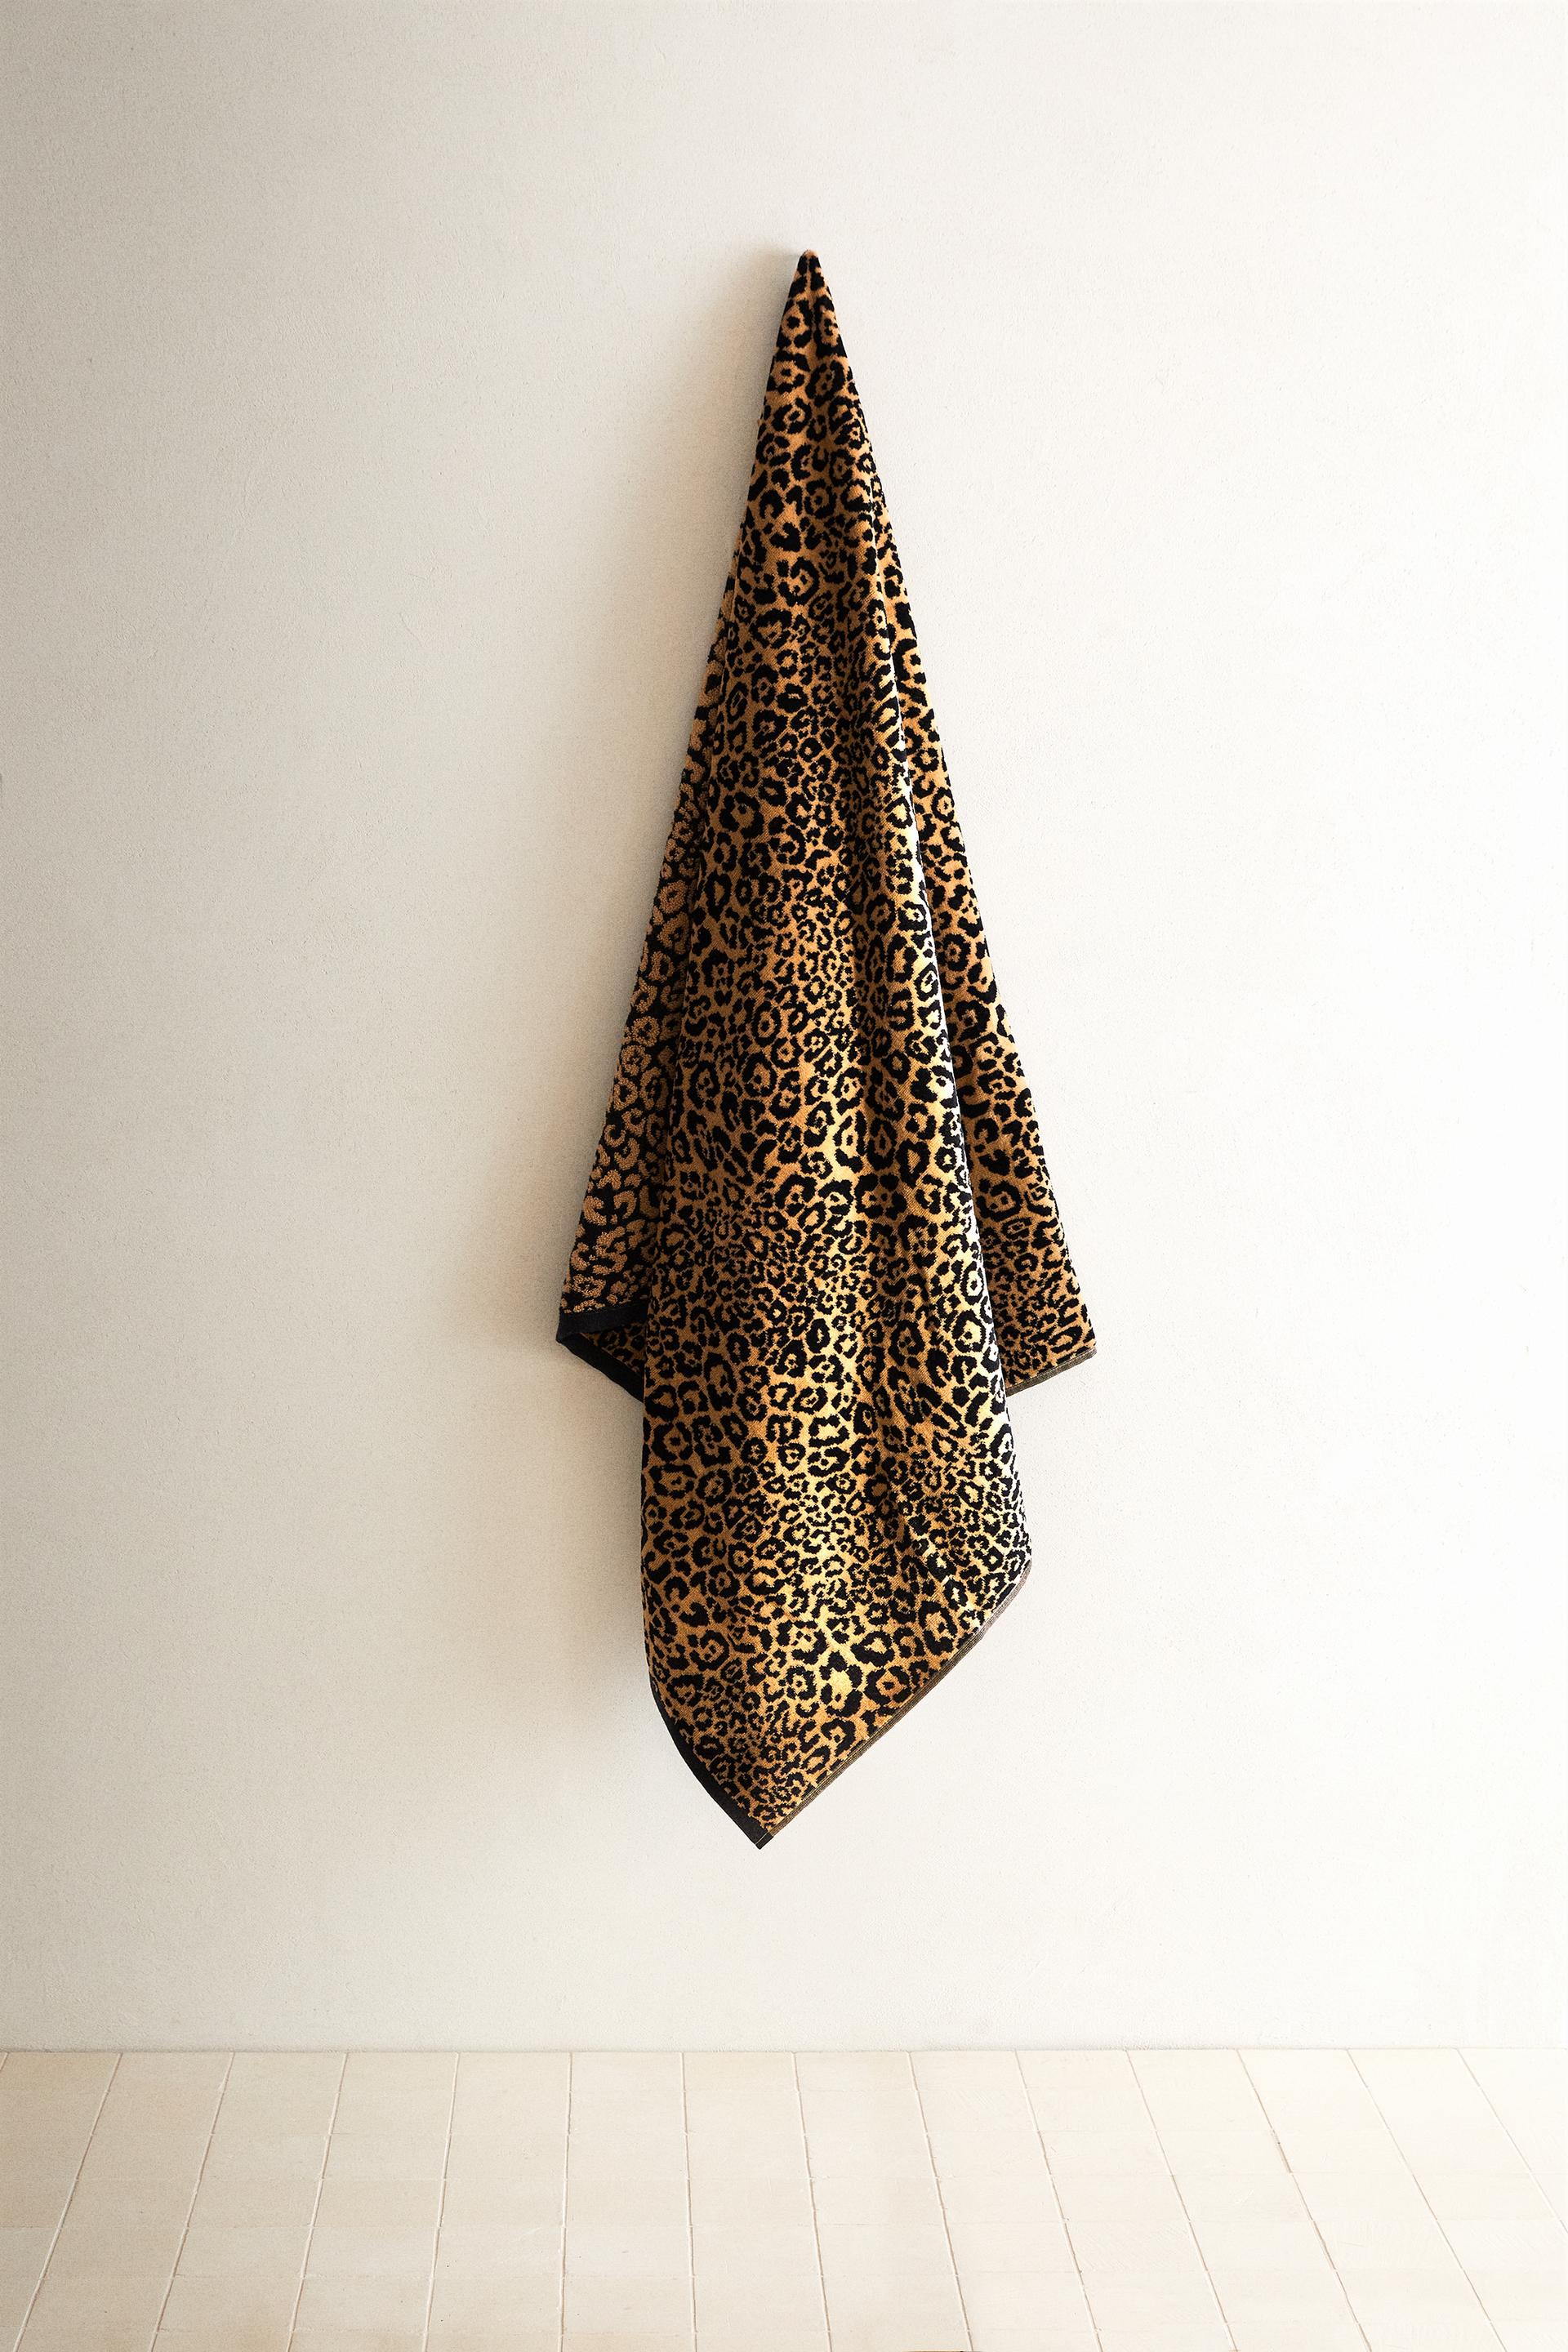 VELOUR LEOPARD TOWEL - Leopard